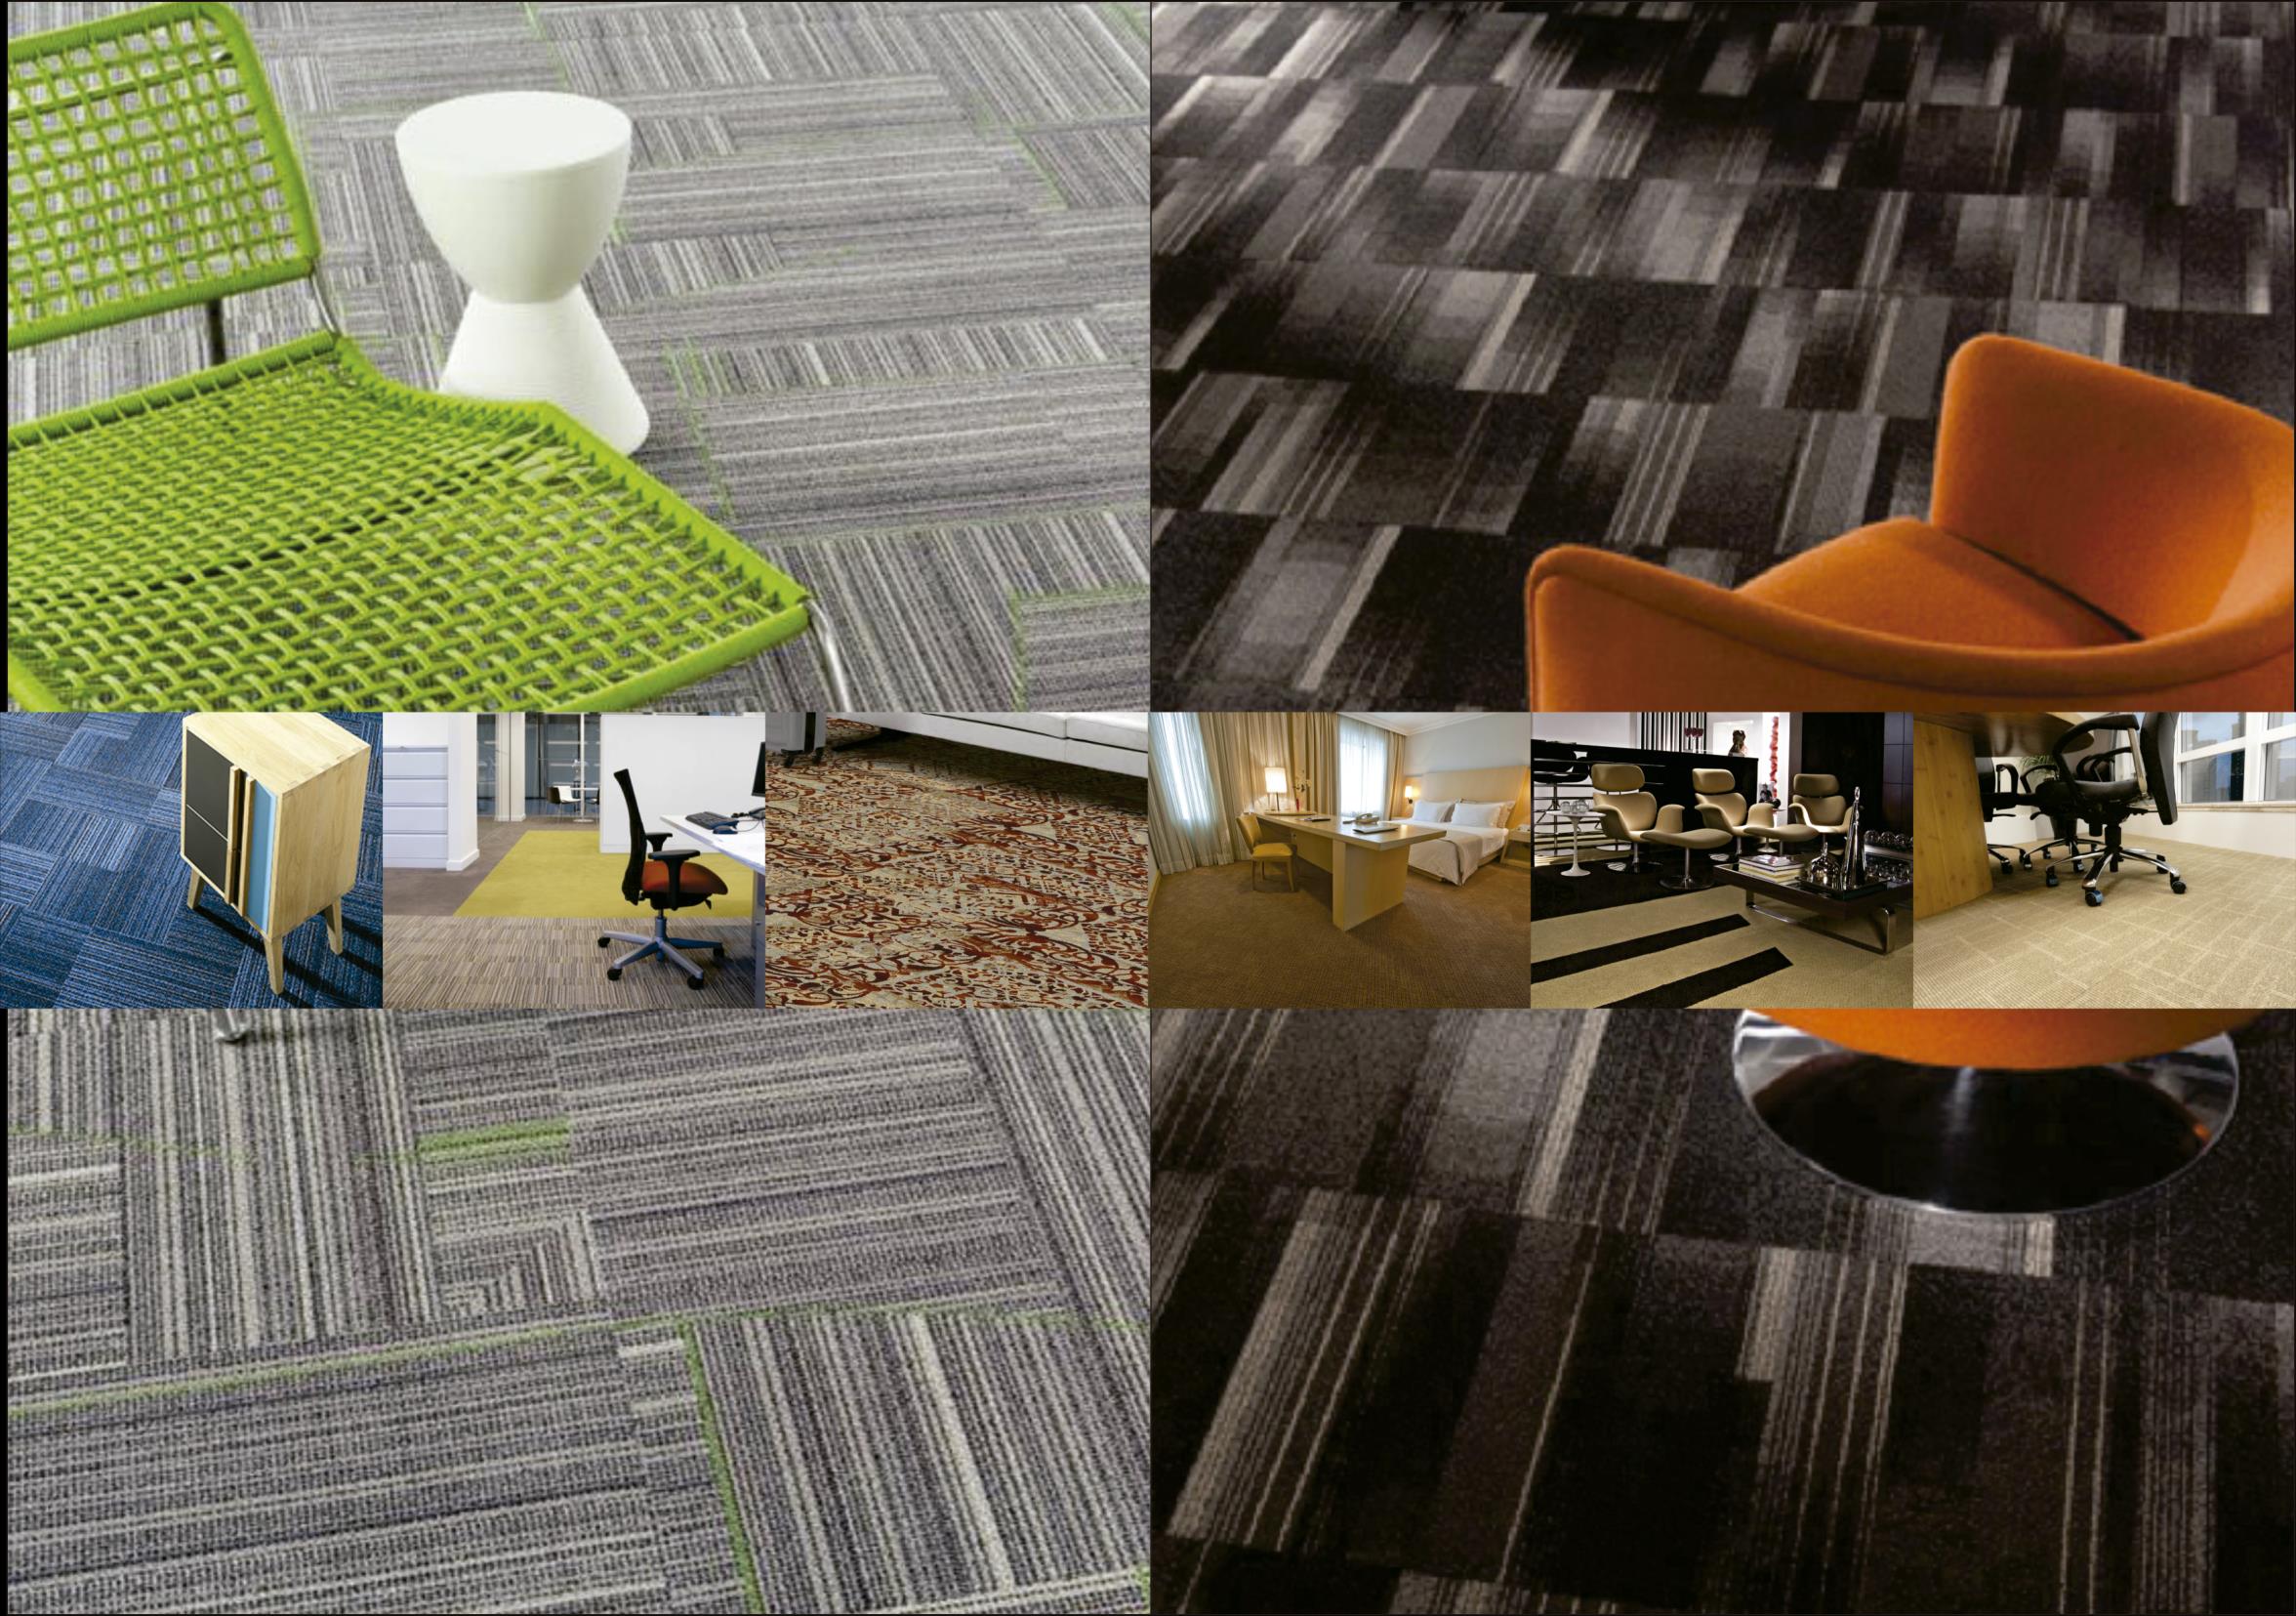 Carpetes MILLIKEN Empresa multinacional líder mundial em carpetes residenciais, corporativos e